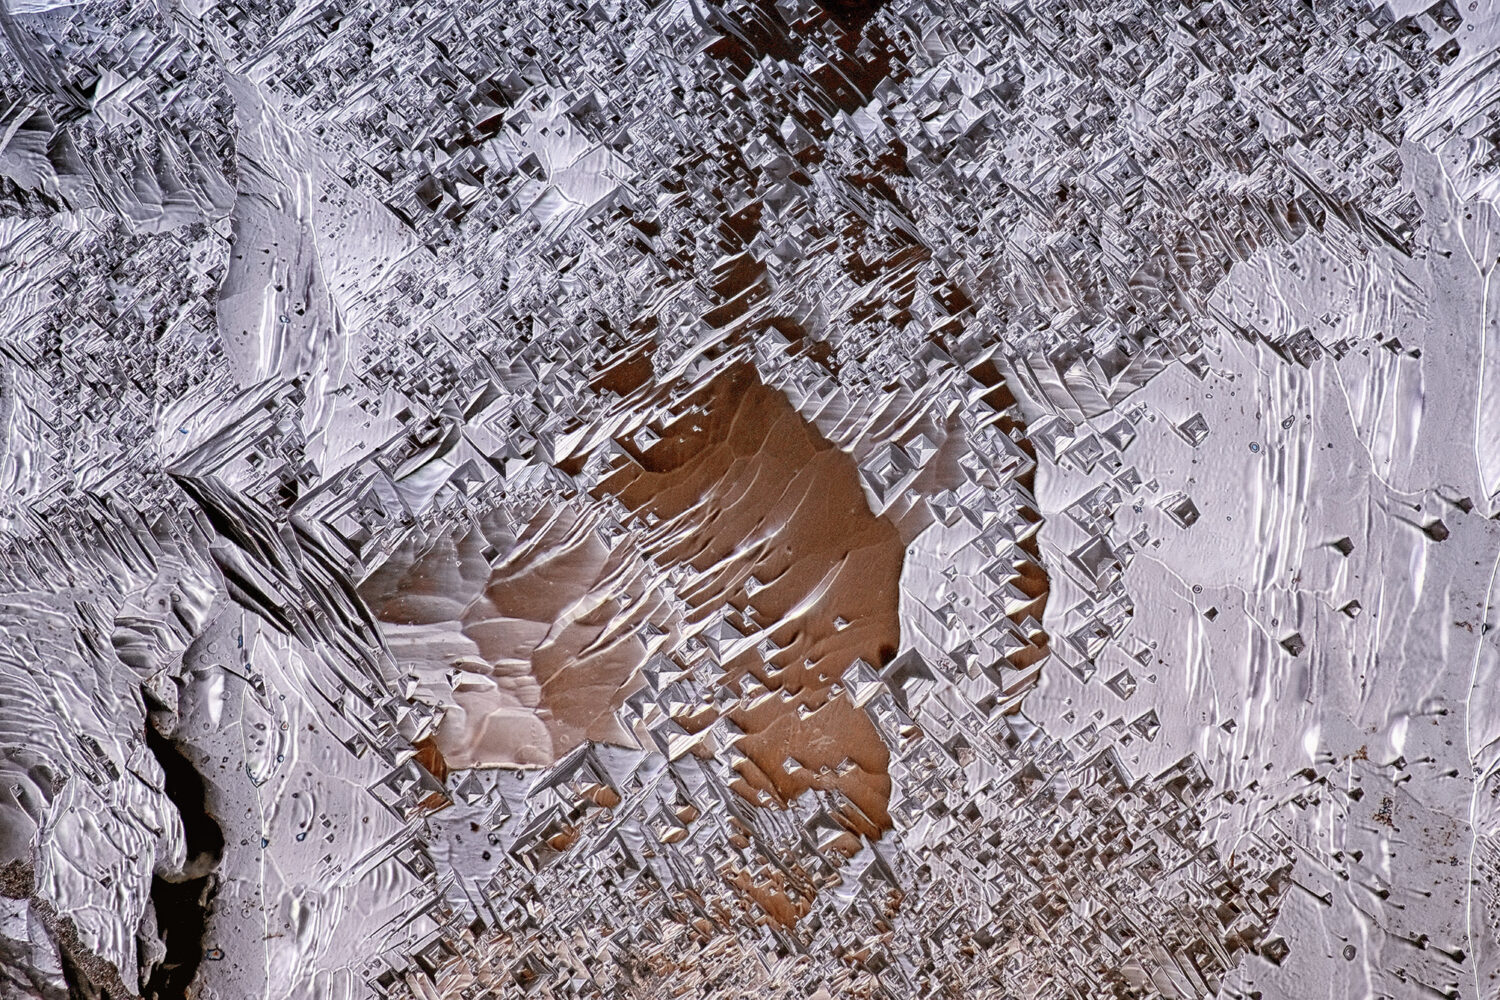 Oberfläche eines Diamant-Kristalls. Natürliche Ätzstrukturen und Deformationsmuster. Bildbreite 1 Millimeter. Aus der Serie "Diamantwelten". Fotografie von Erwin Geiss